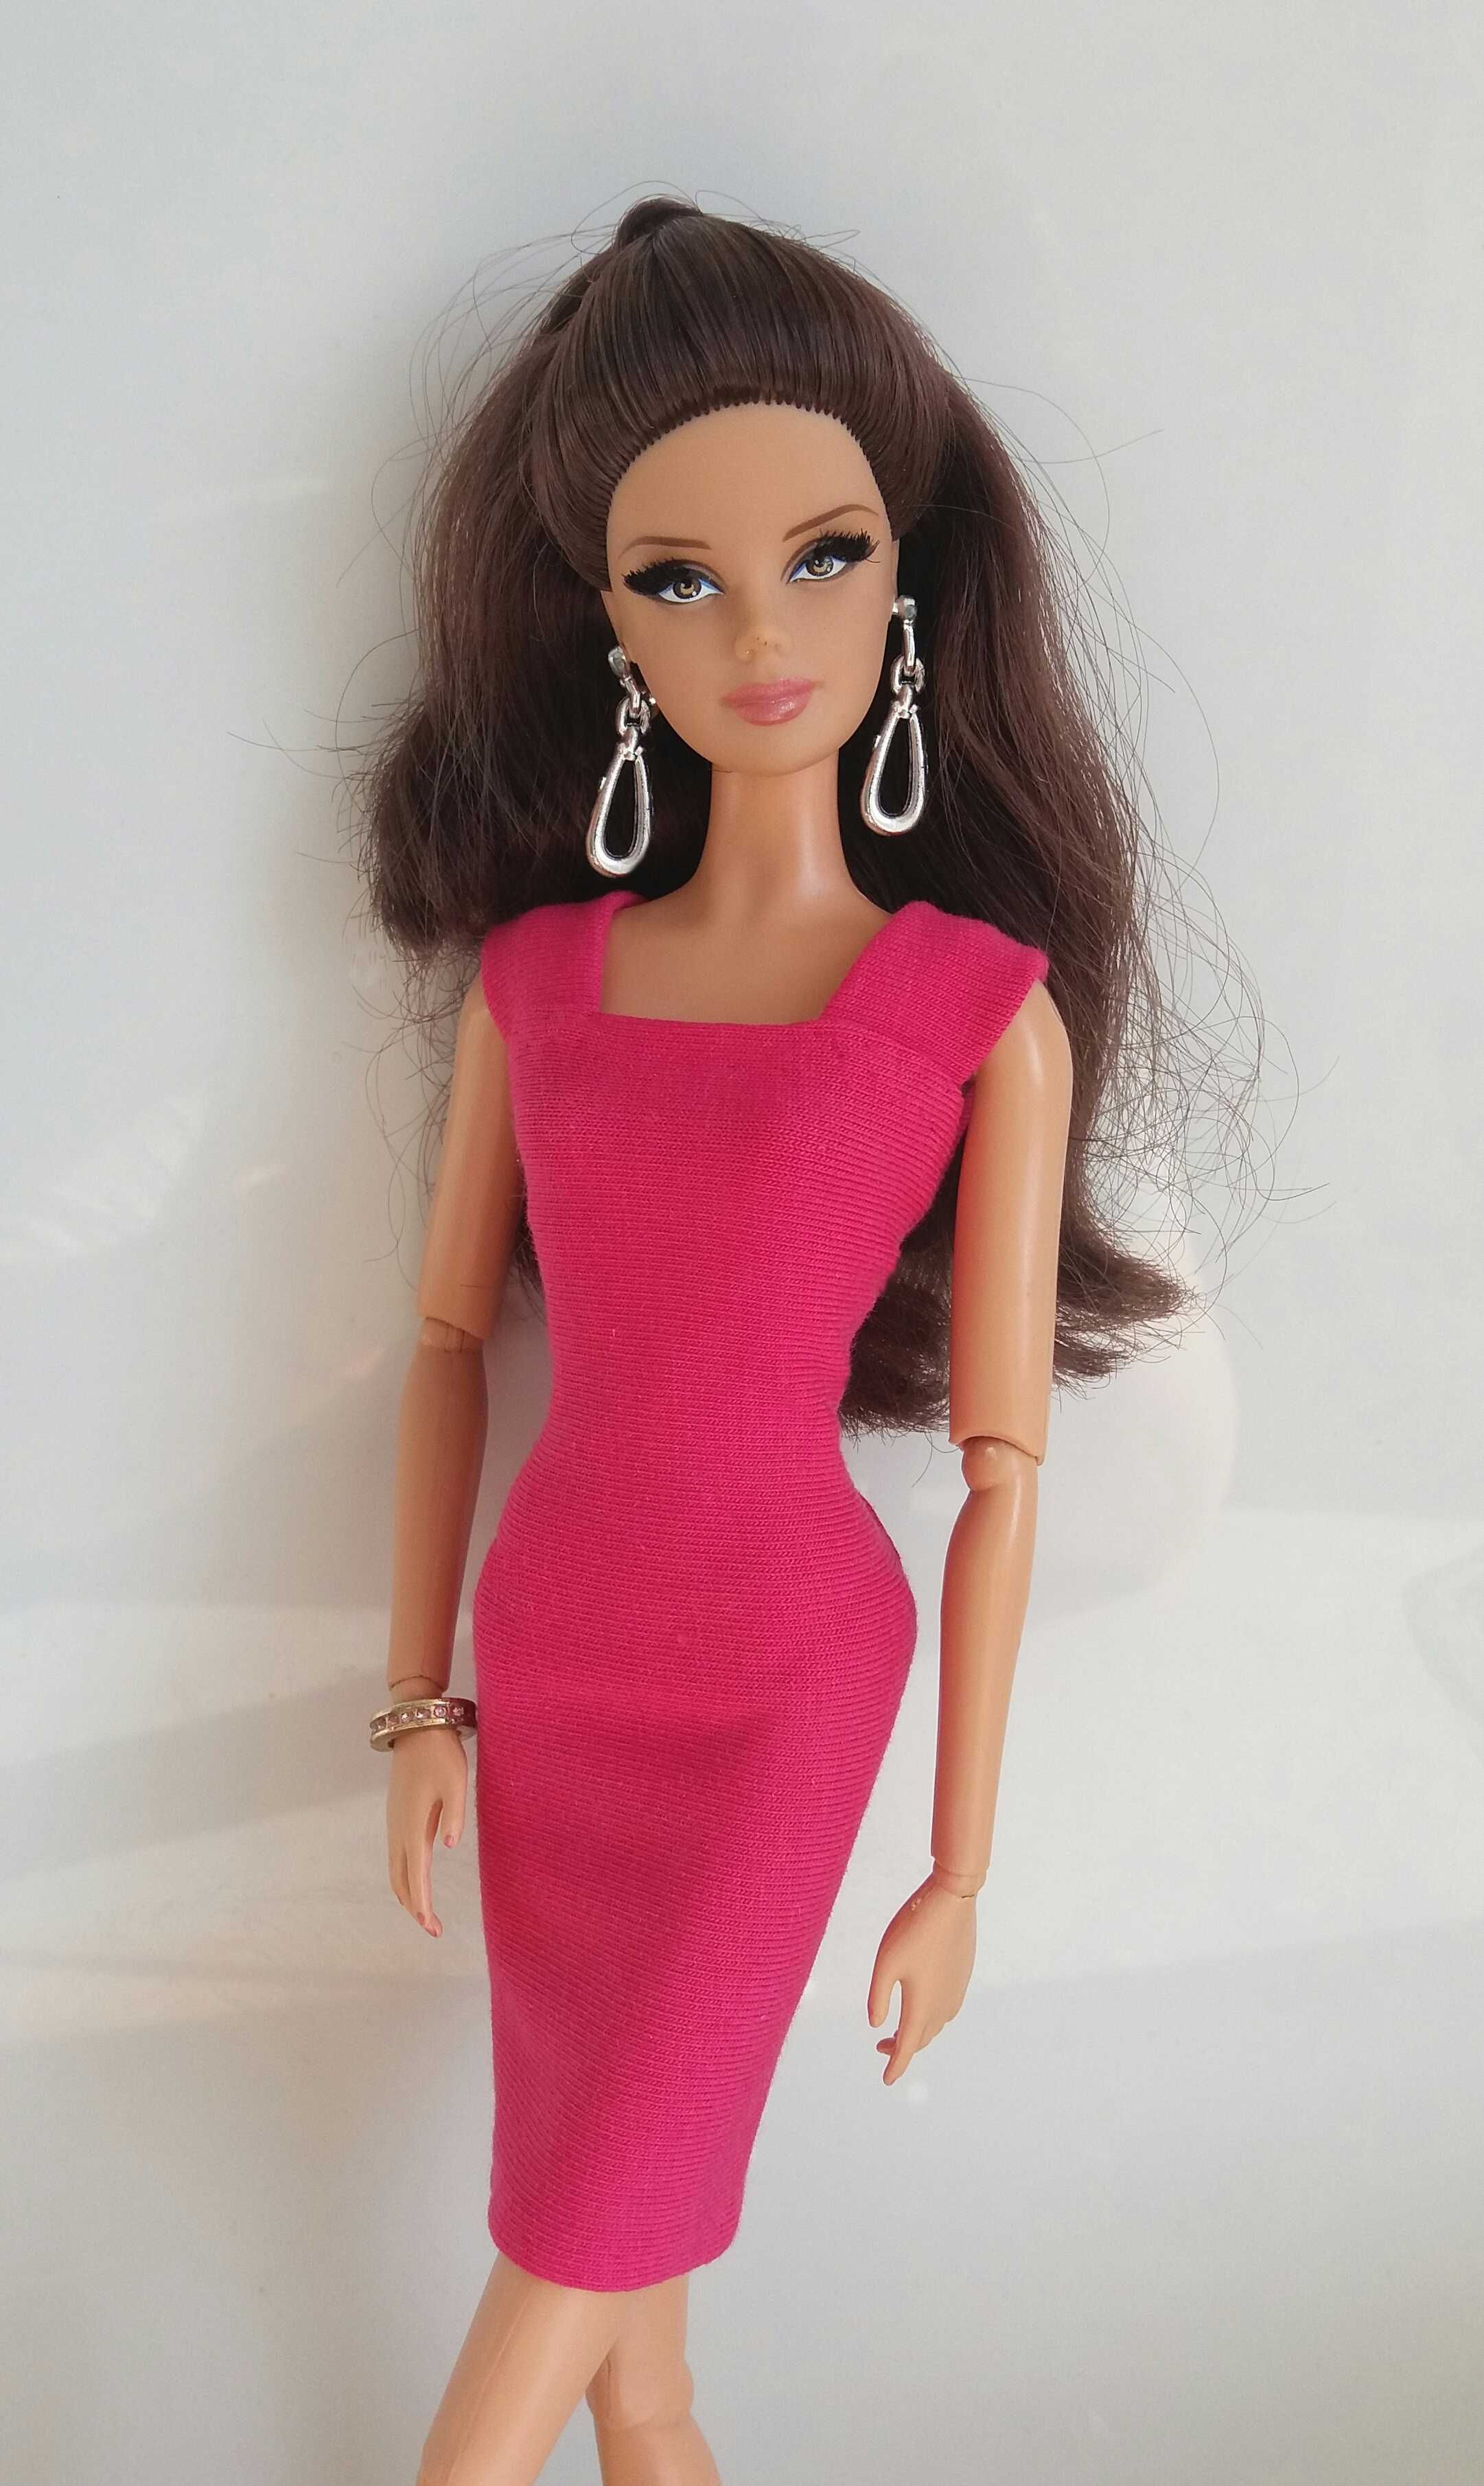 ubranko dla lalki barbie - sukienka różowa